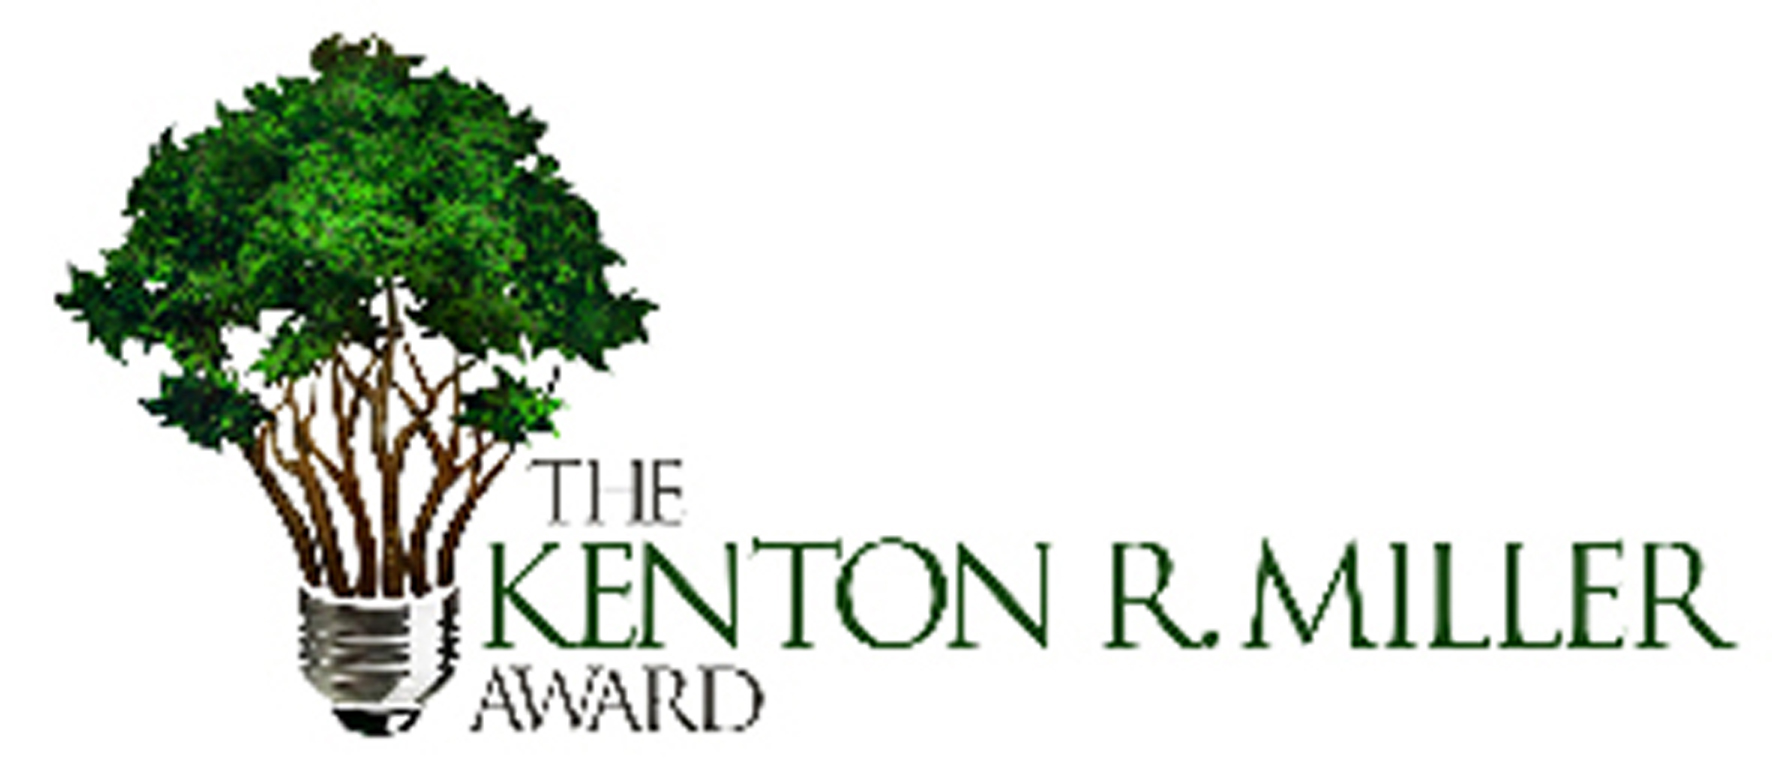 Kenton Miller Award Logo